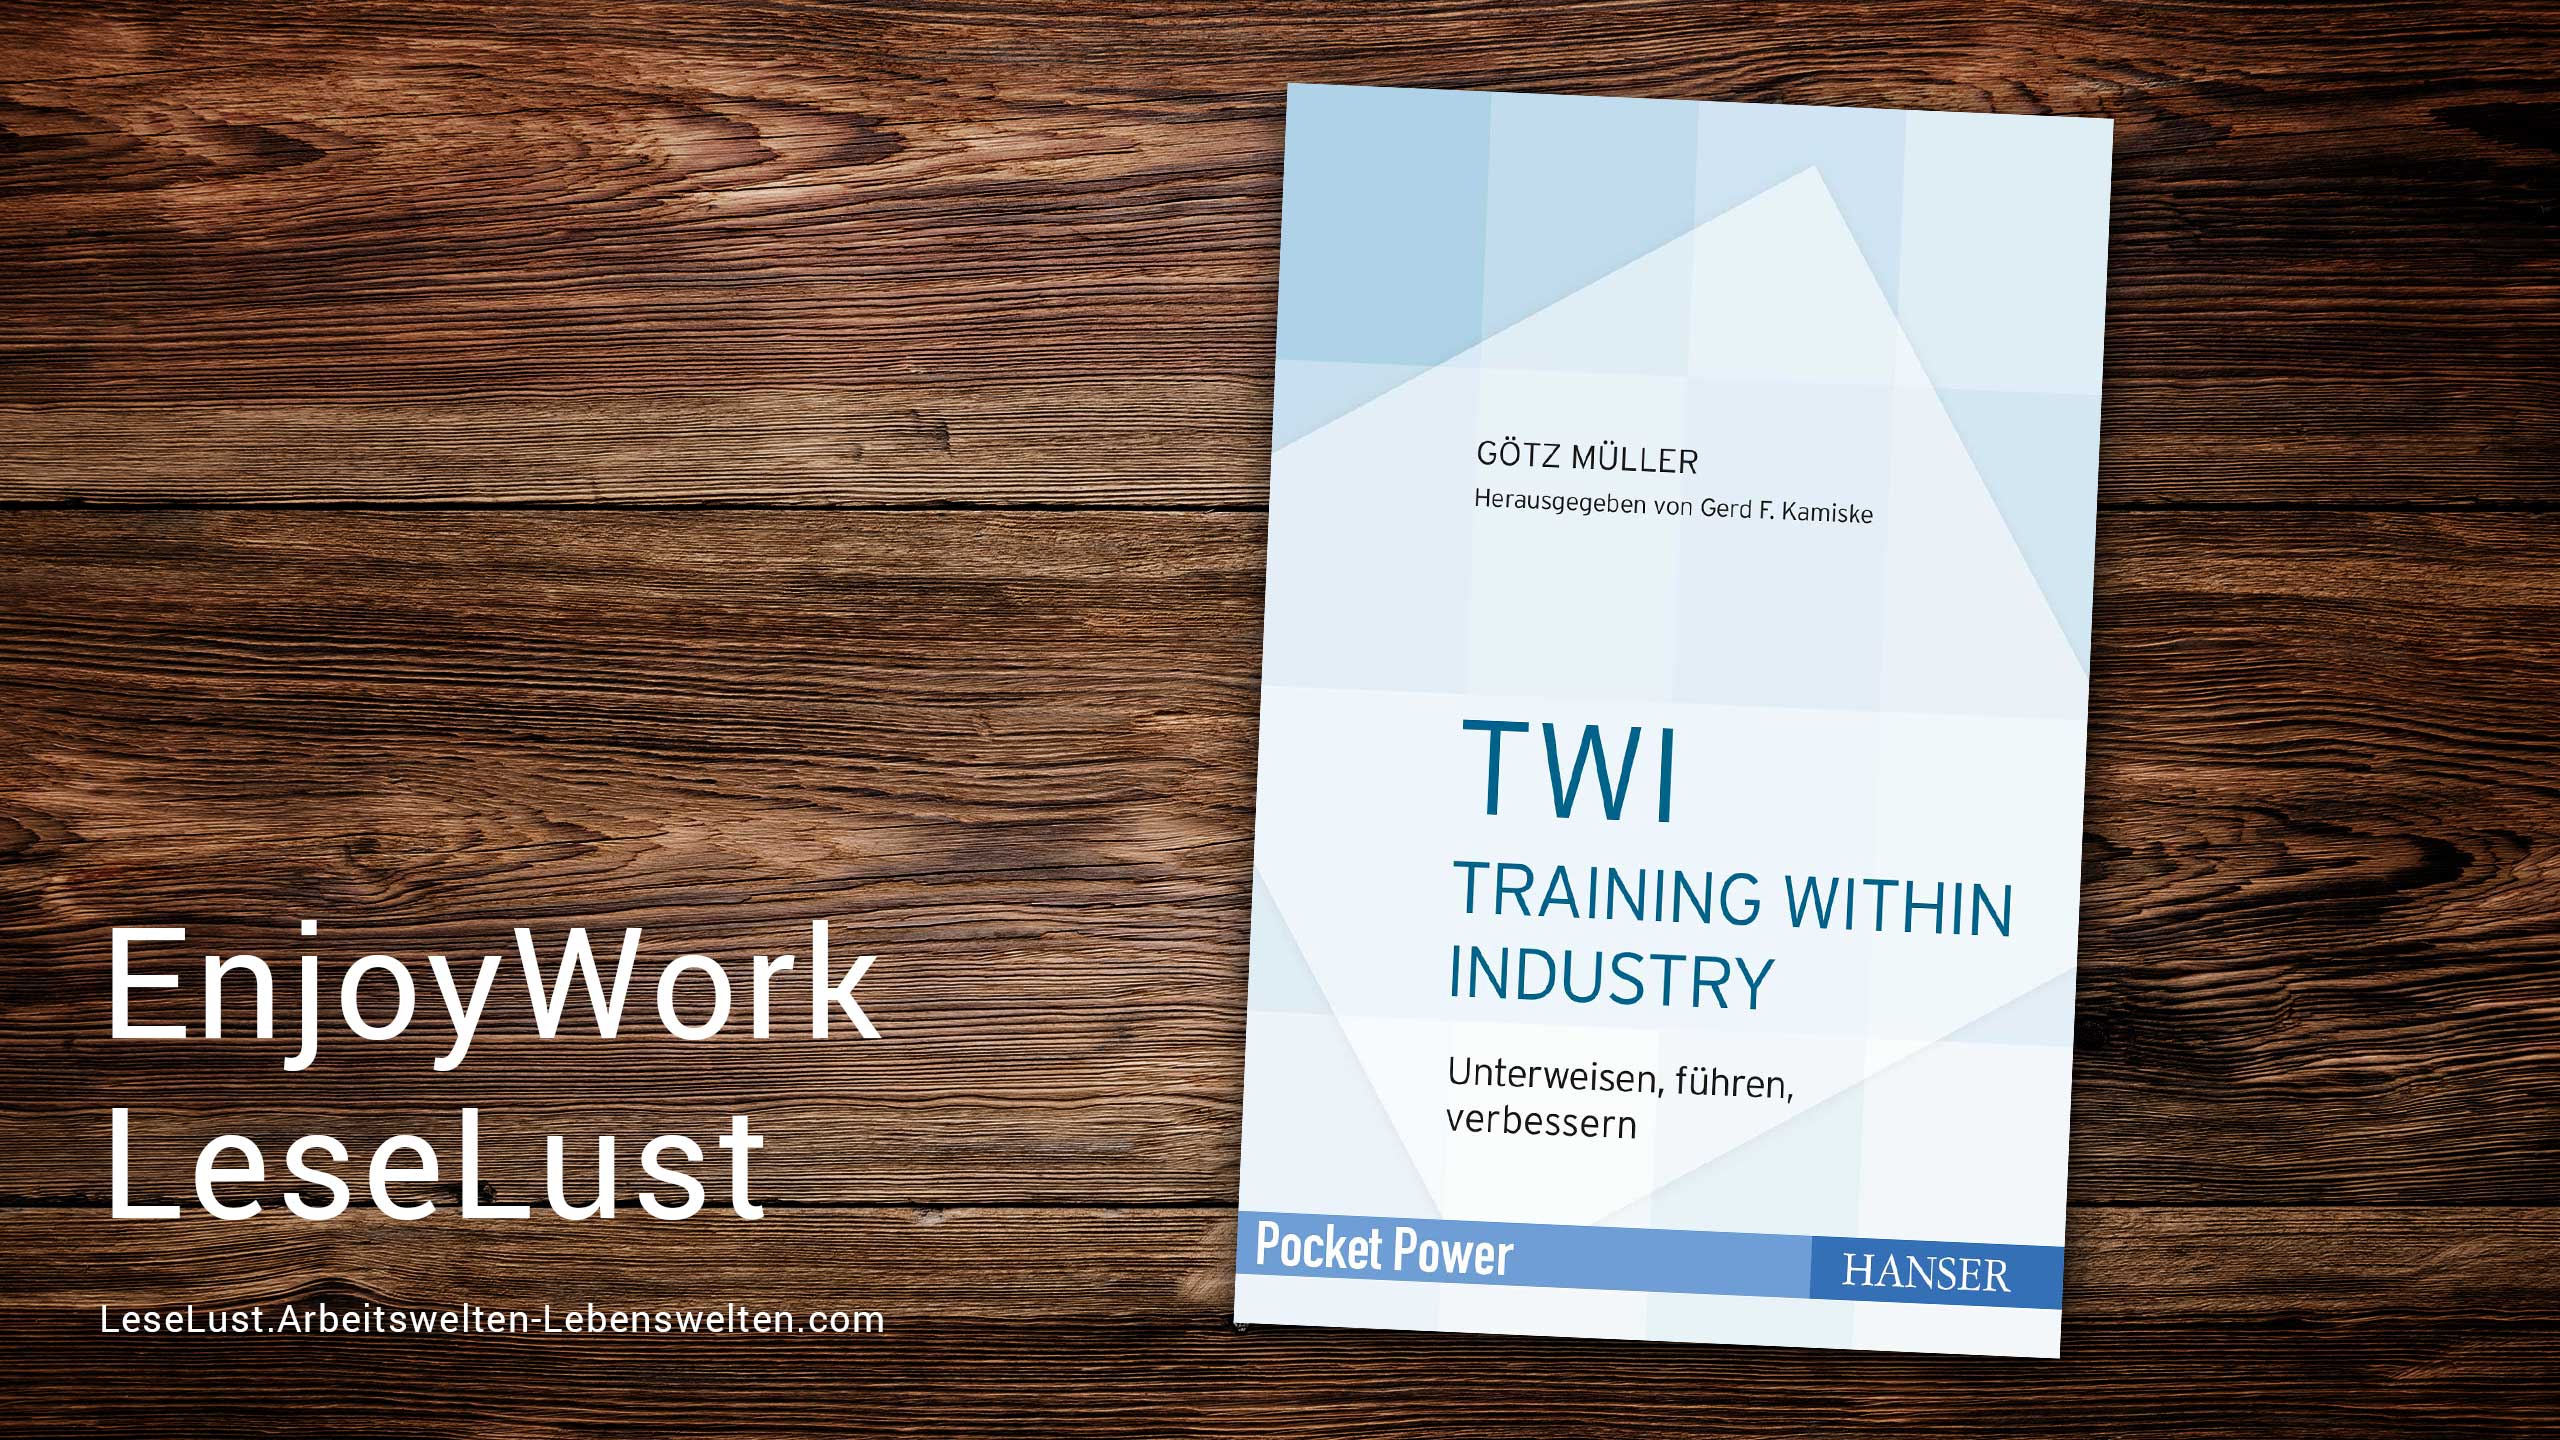 EnjoyWork LeseLust: Training within Industry (TWI) - Unterweisen, führen, verbessern von Götz Müller